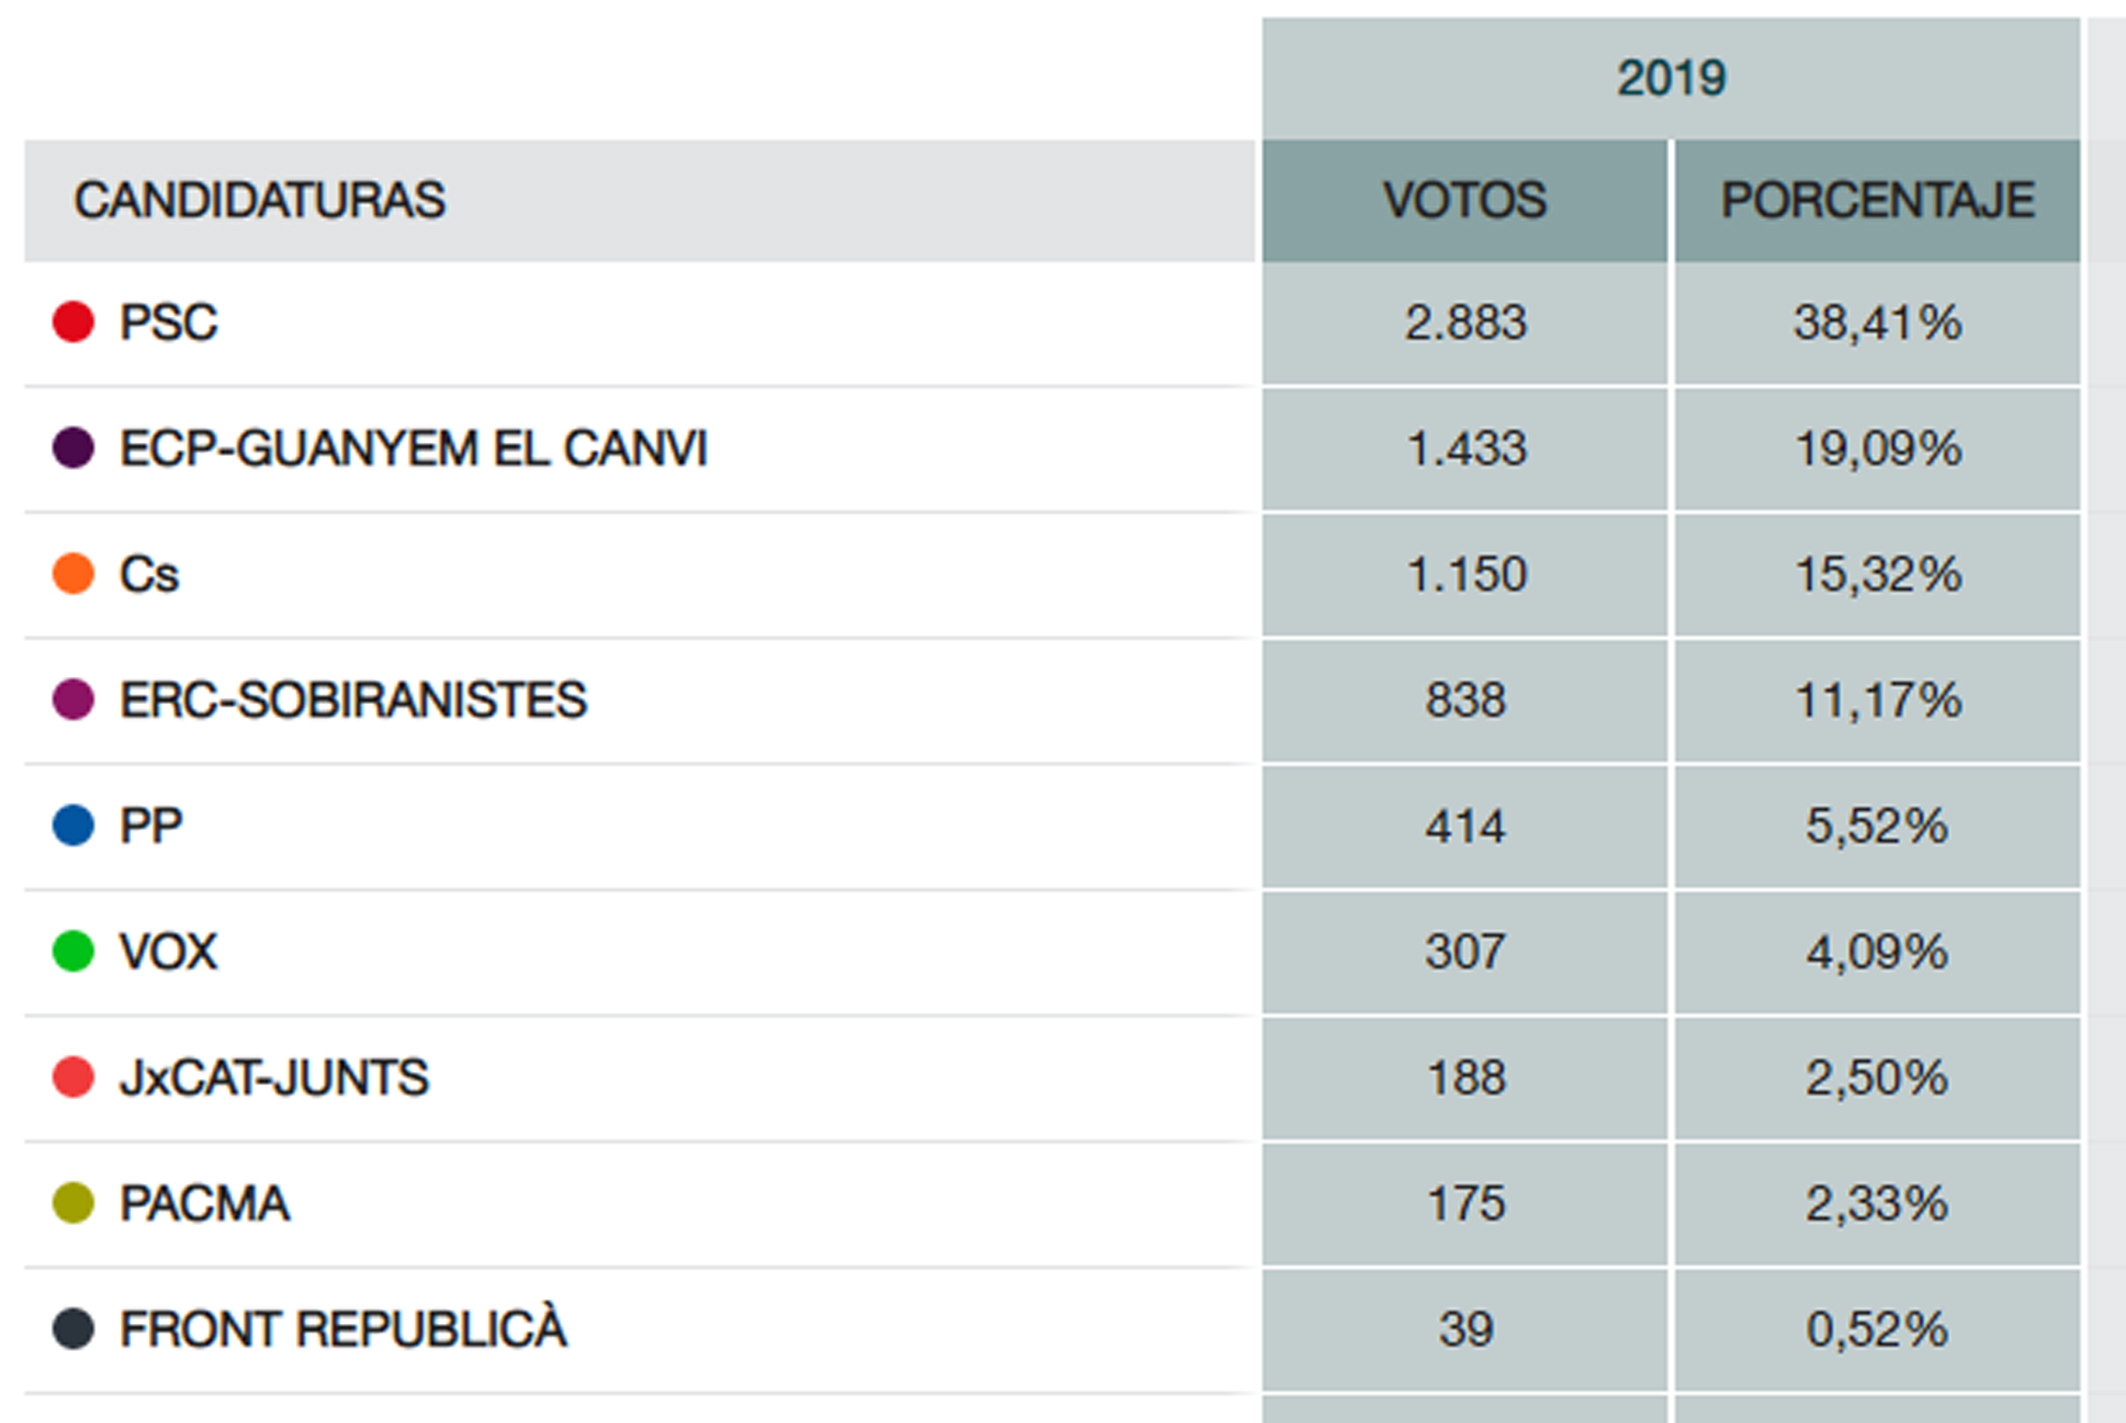 El Partit dels Socialistes és clarament la formació més votada a la Llagosta